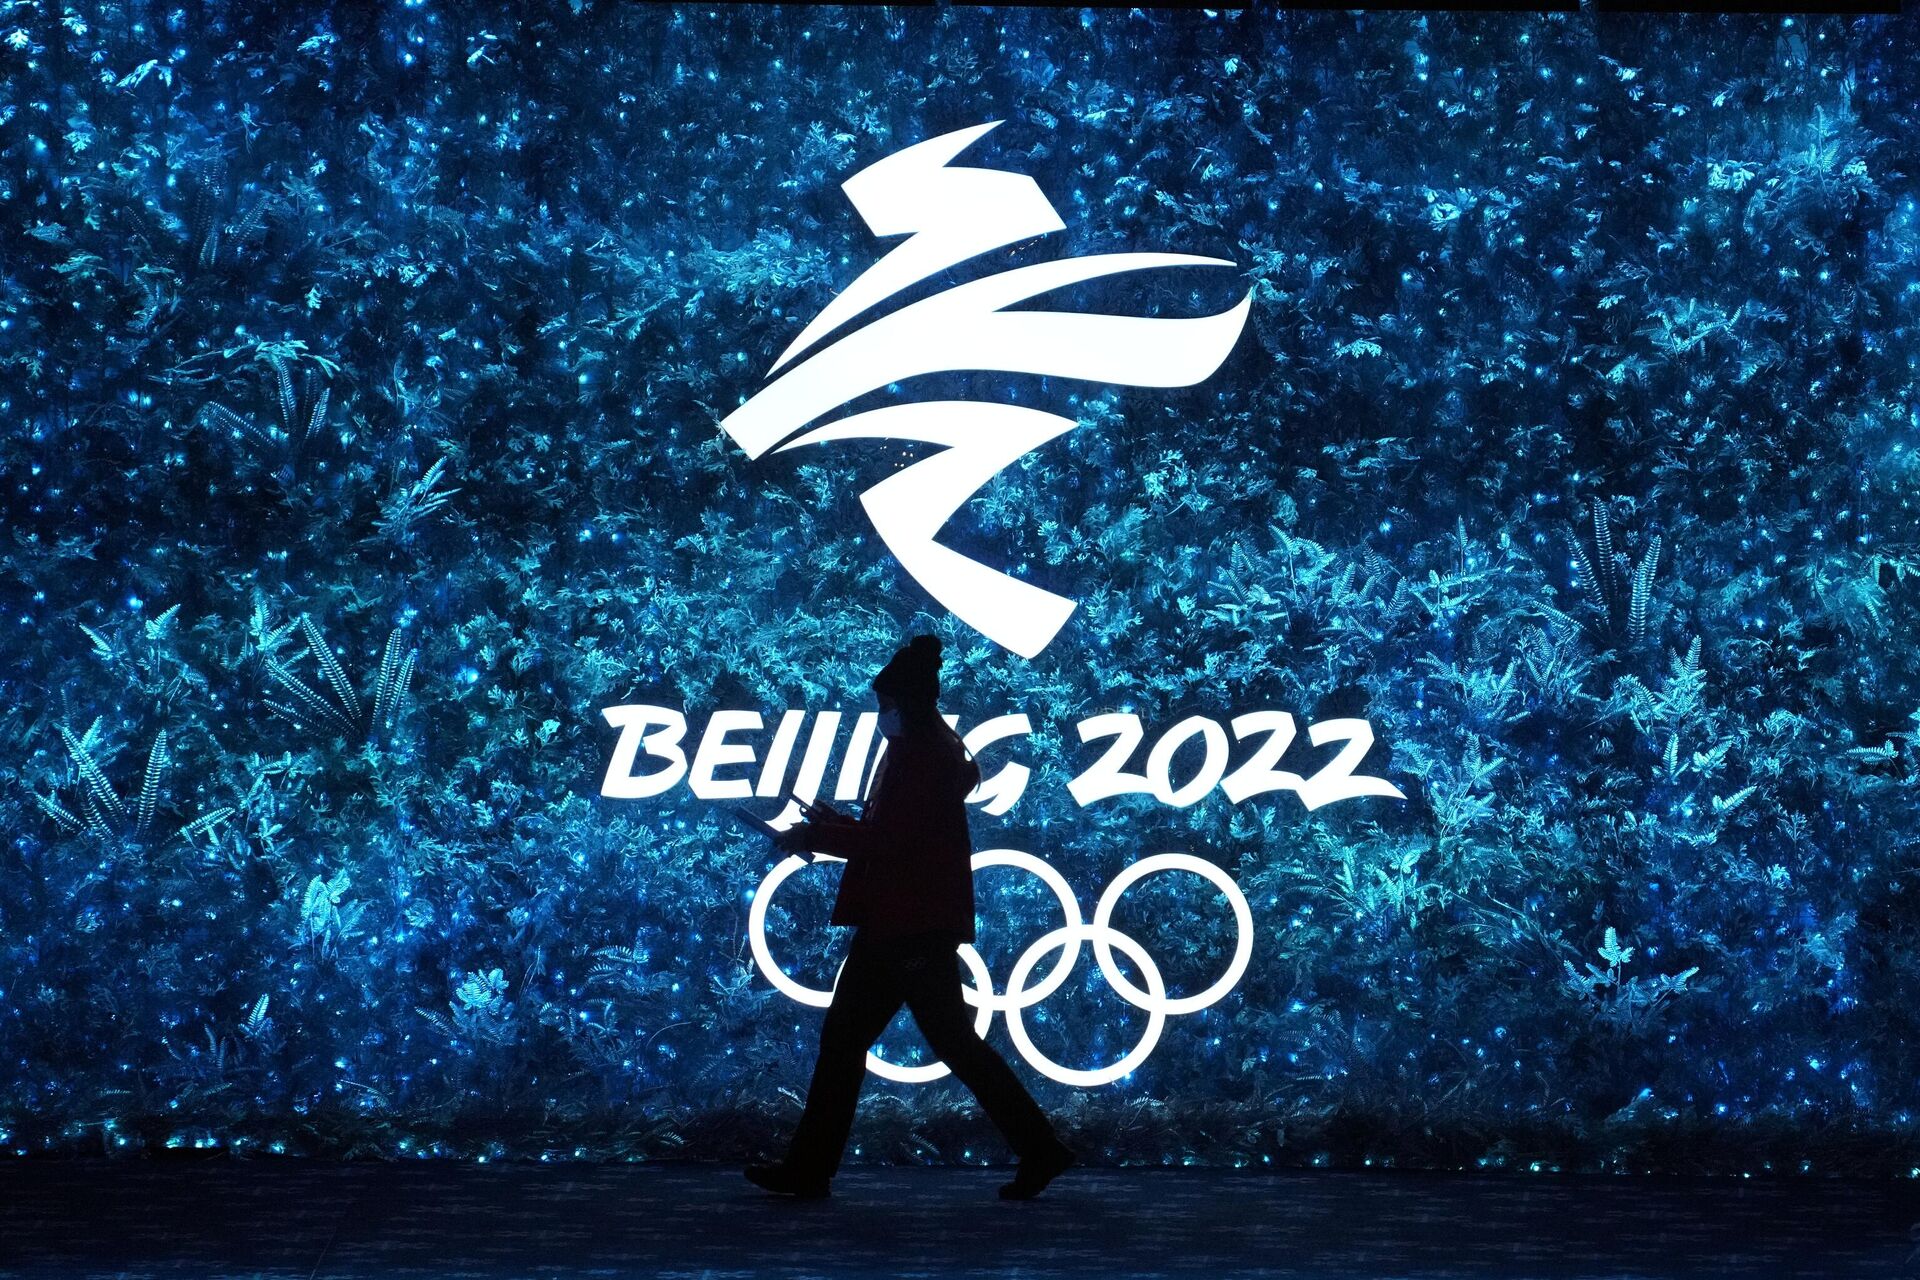 Церемония закрытия XXIV Олимпийских игр в Пекине - Sputnik Ўзбекистон, 1920, 20.02.2022